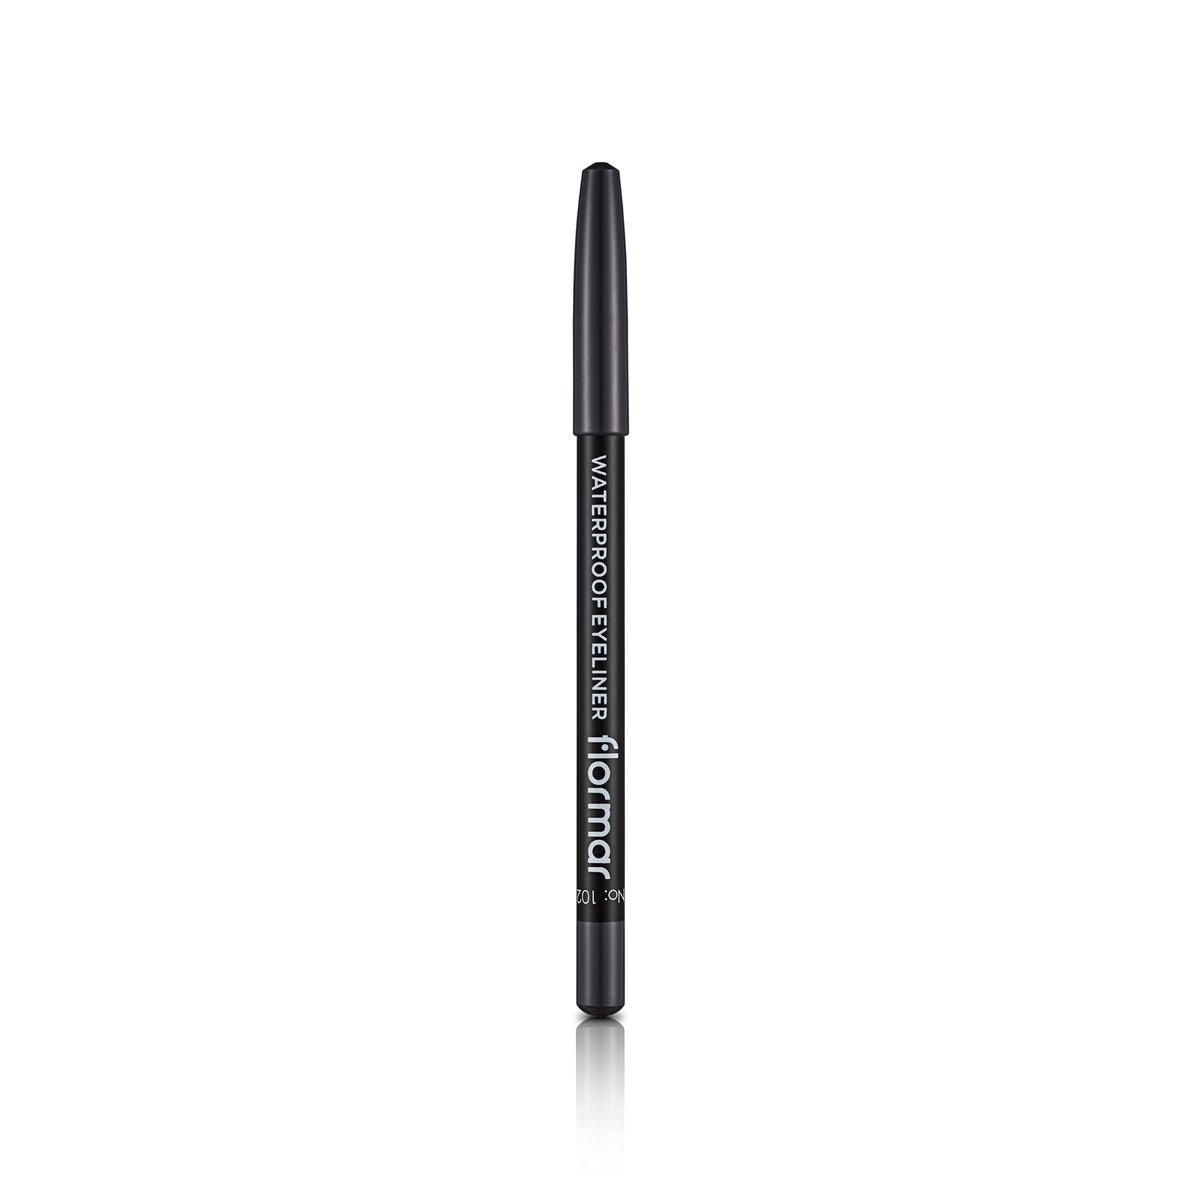 Flormar Waterproof Eyeliner Pencil - 102 Smoky Grey 1pc